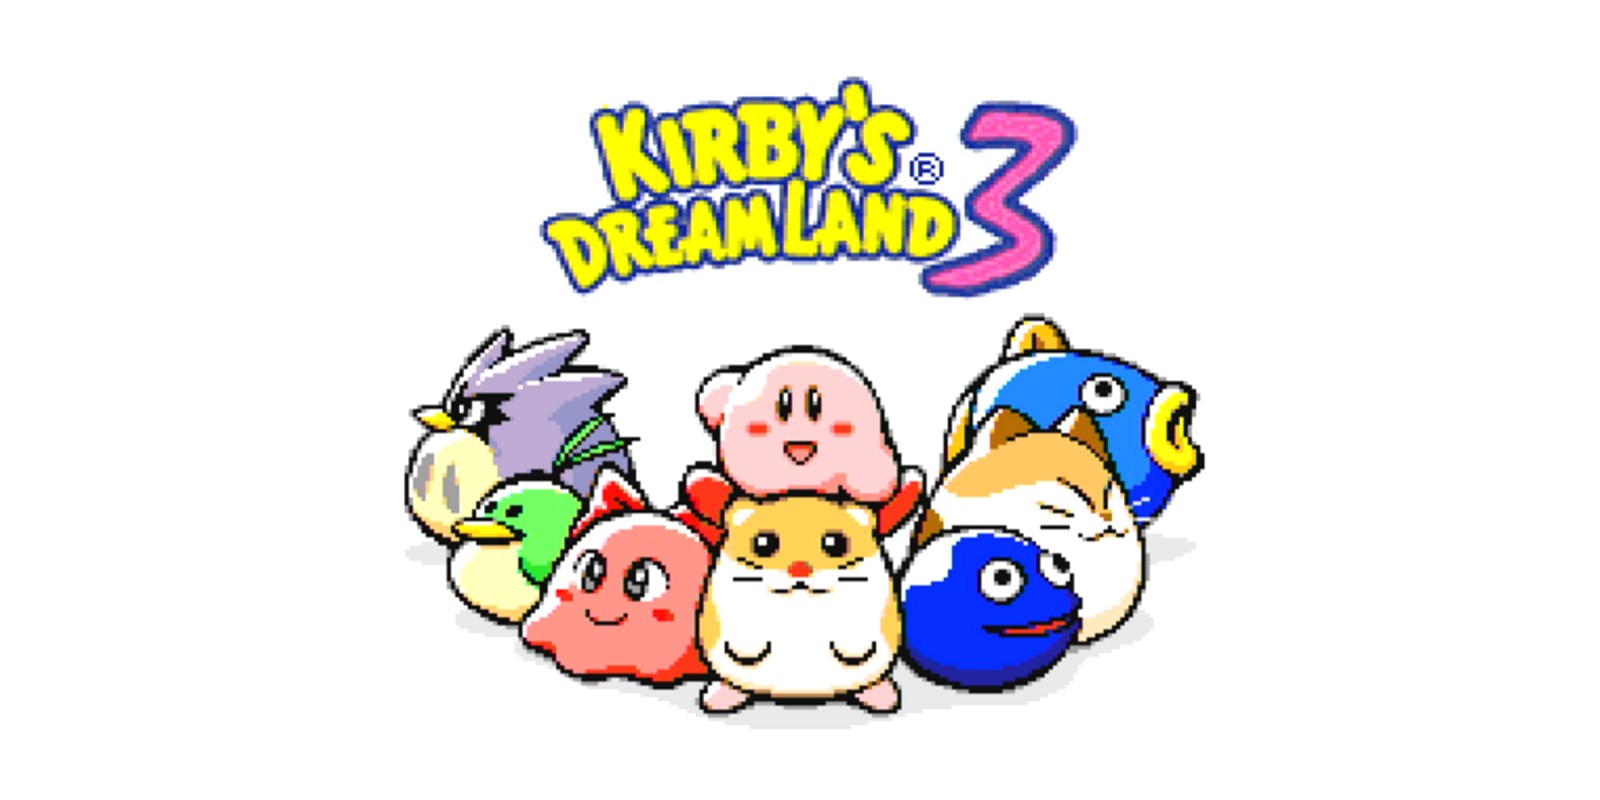 jaquette du jeu vidéo Kirby's Dream Land 3